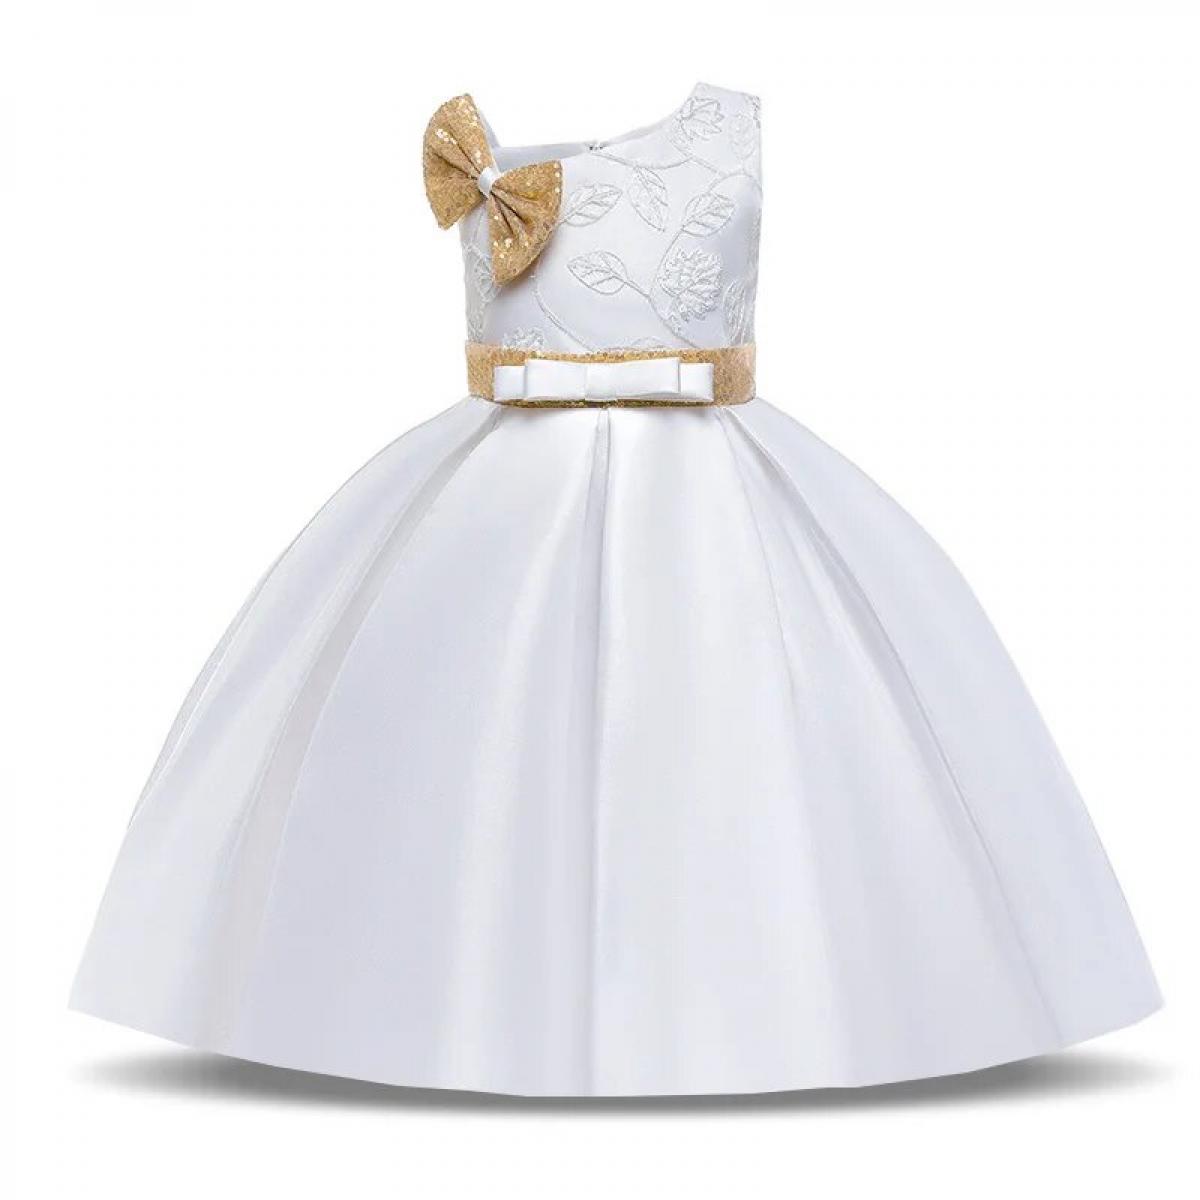 פשוט לבנות בנות פאייטים קשת שמלת נסיכה ילדים בגדי ילדים אלגנטי רקמת פרח מסיבת יום הולדת חתונה